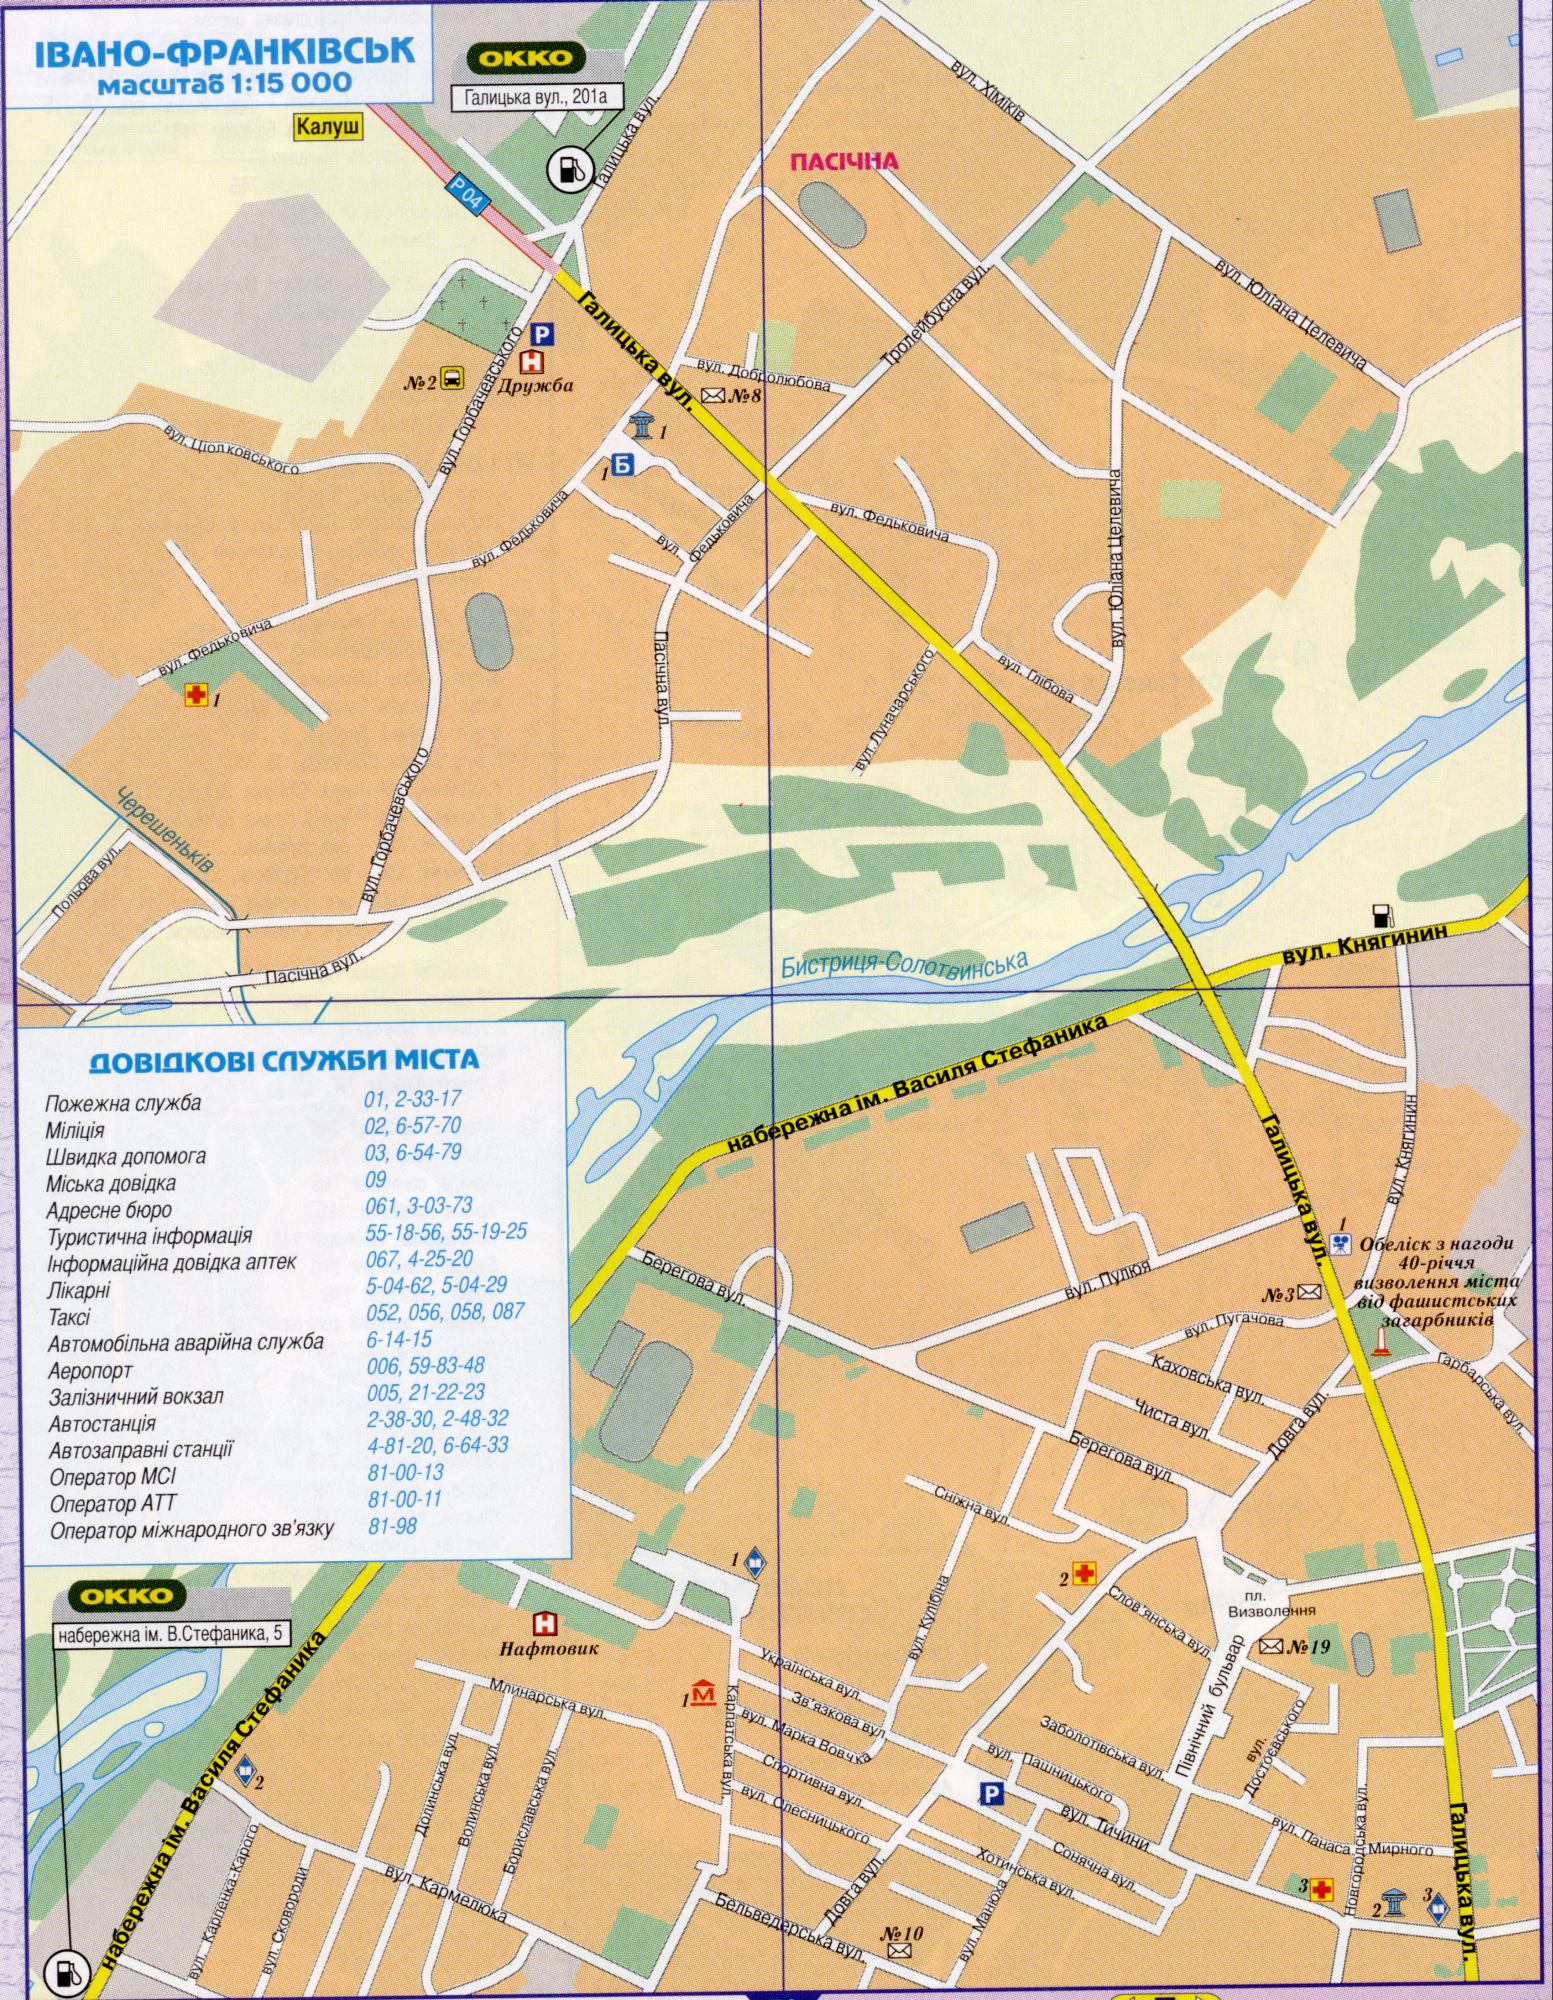 Карта Ивано-Франковска, подробный план города Ивано Франковск масштаба 1см-150метров. Скачать бесплатно